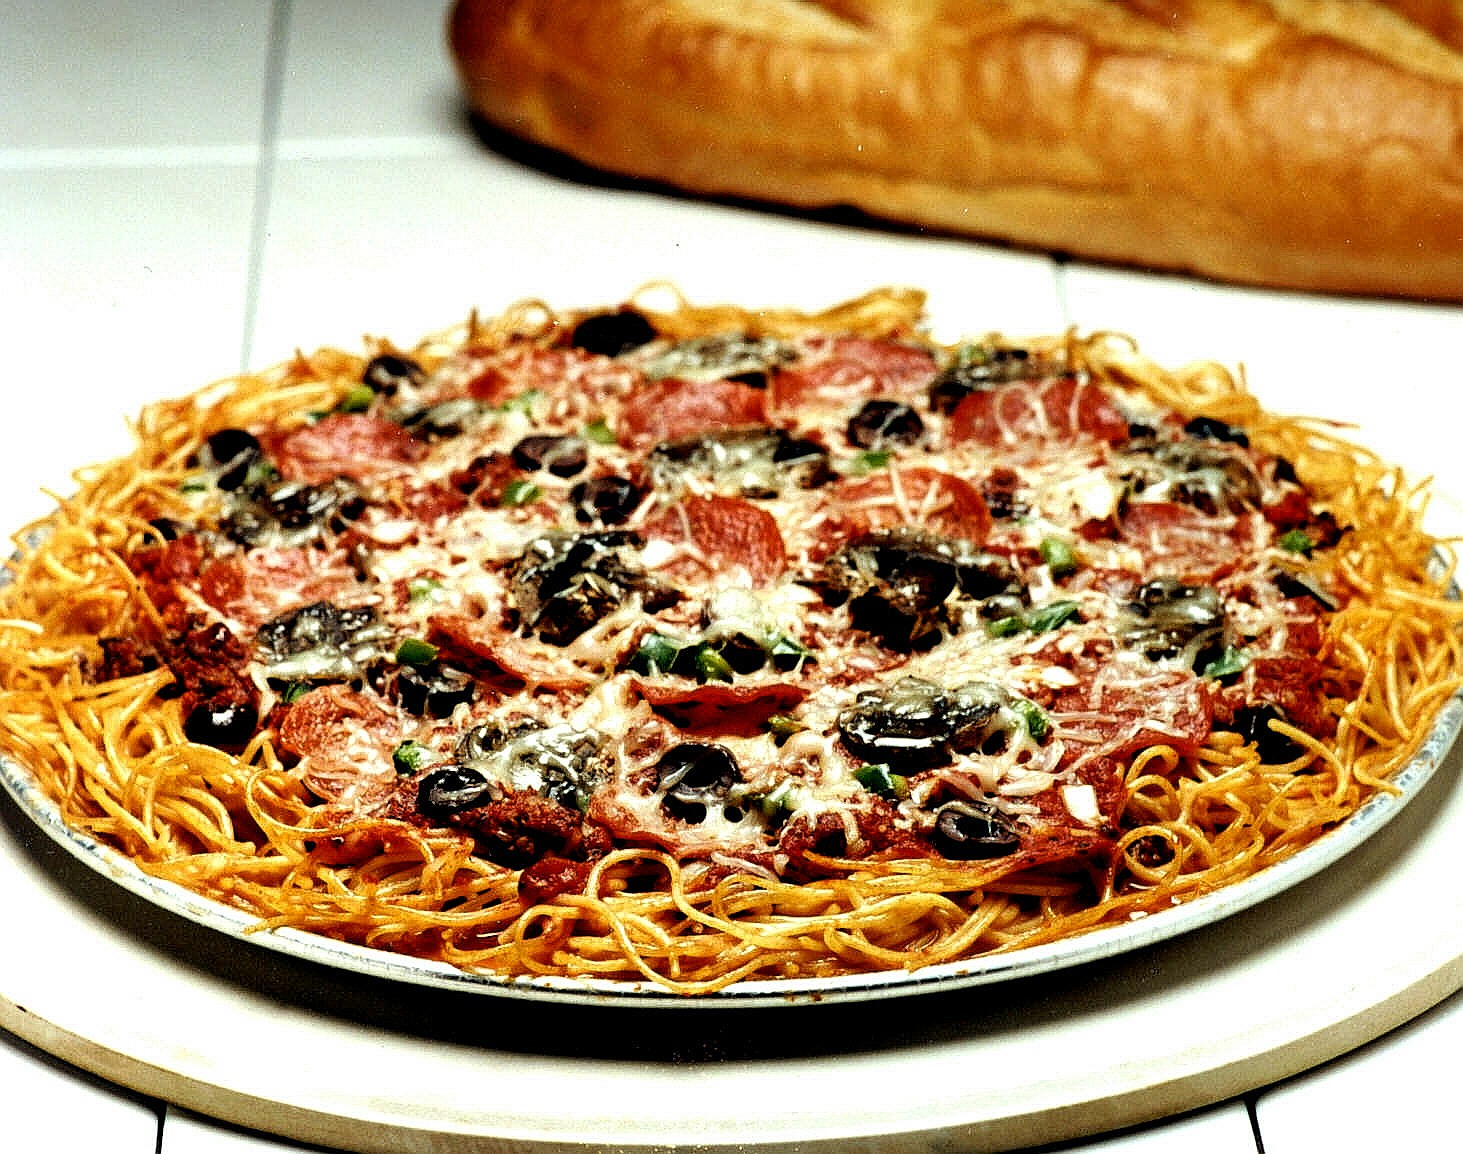 http://2.bp.blogspot.com/_-wcRViOXQUI/TSEGfC4WlBI/AAAAAAAABf4/PIypg7Zj3kM/s1600/Spaghetti-Pizza-recipe.JPG